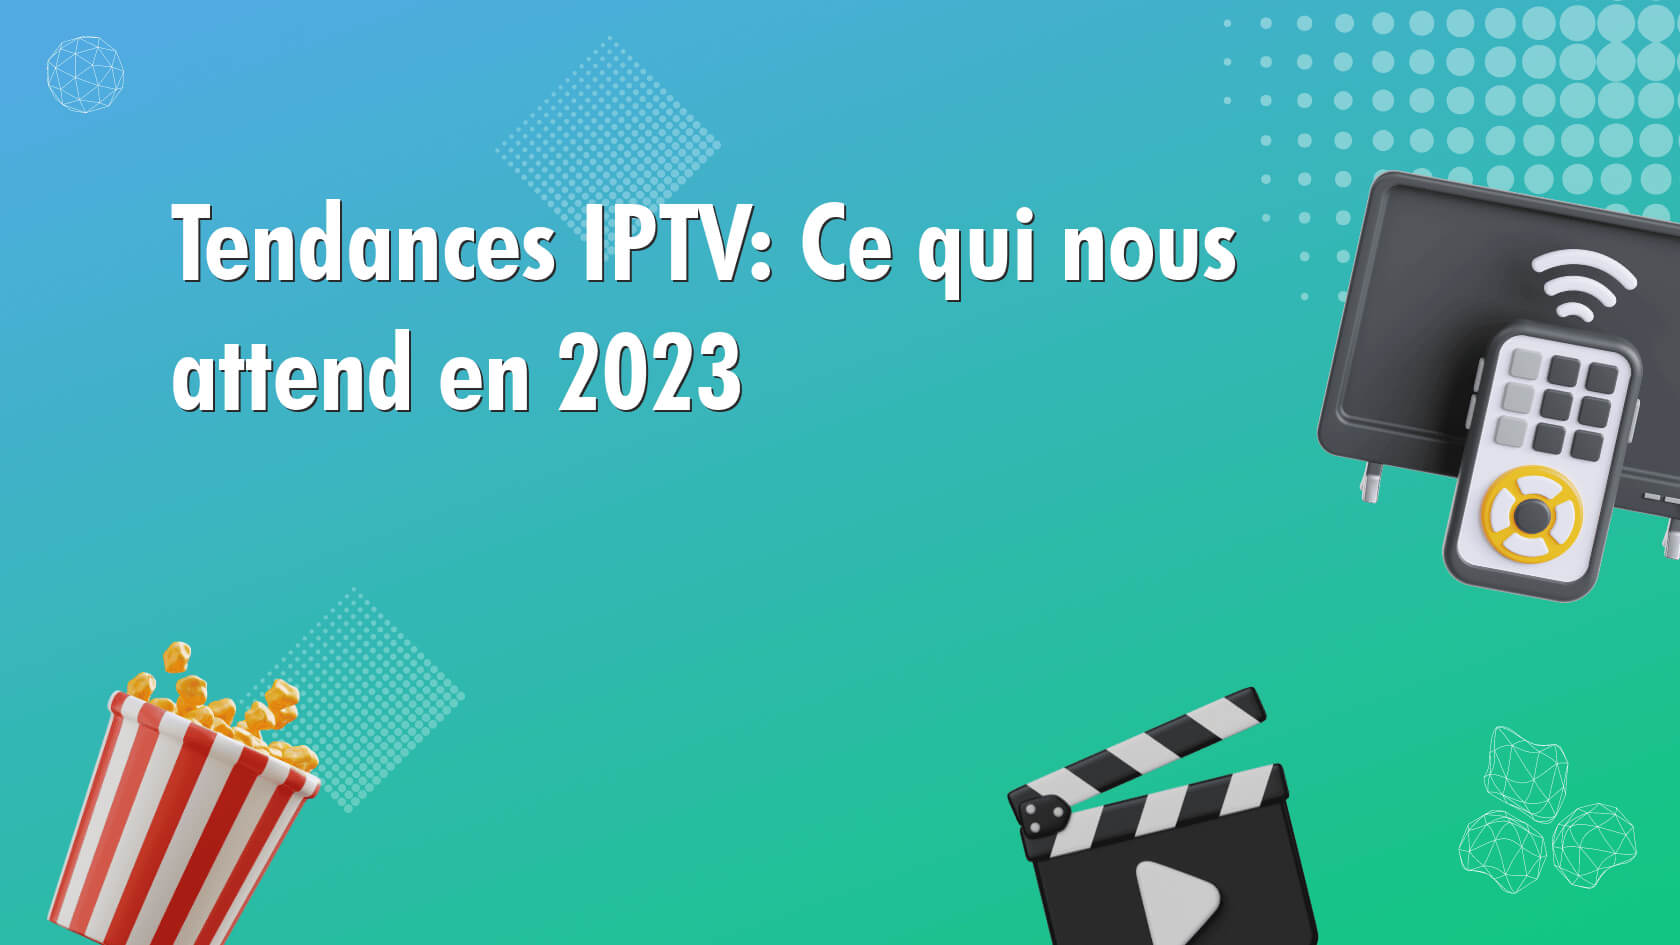 Tendances IPTV: Ce qui nous attend en 2023